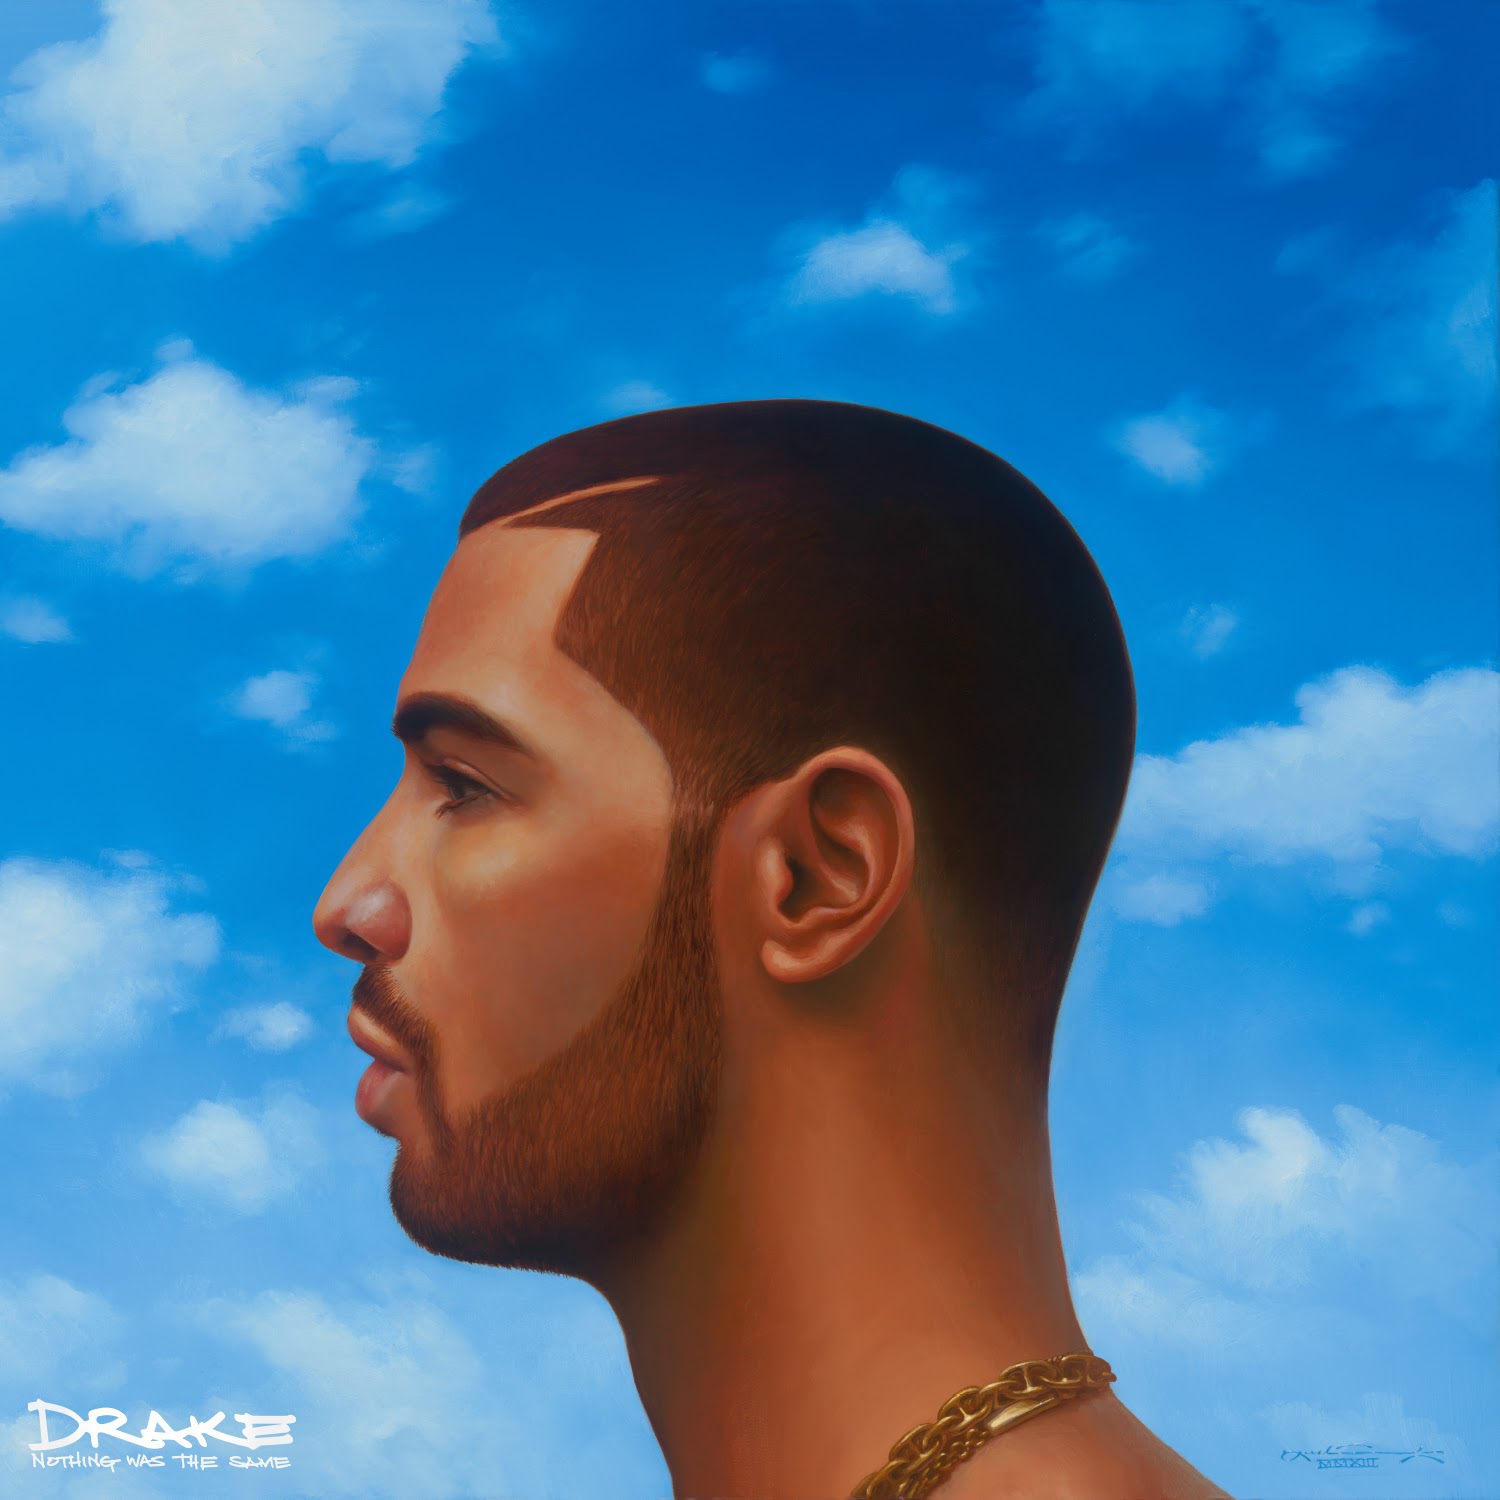 Drake full album free download